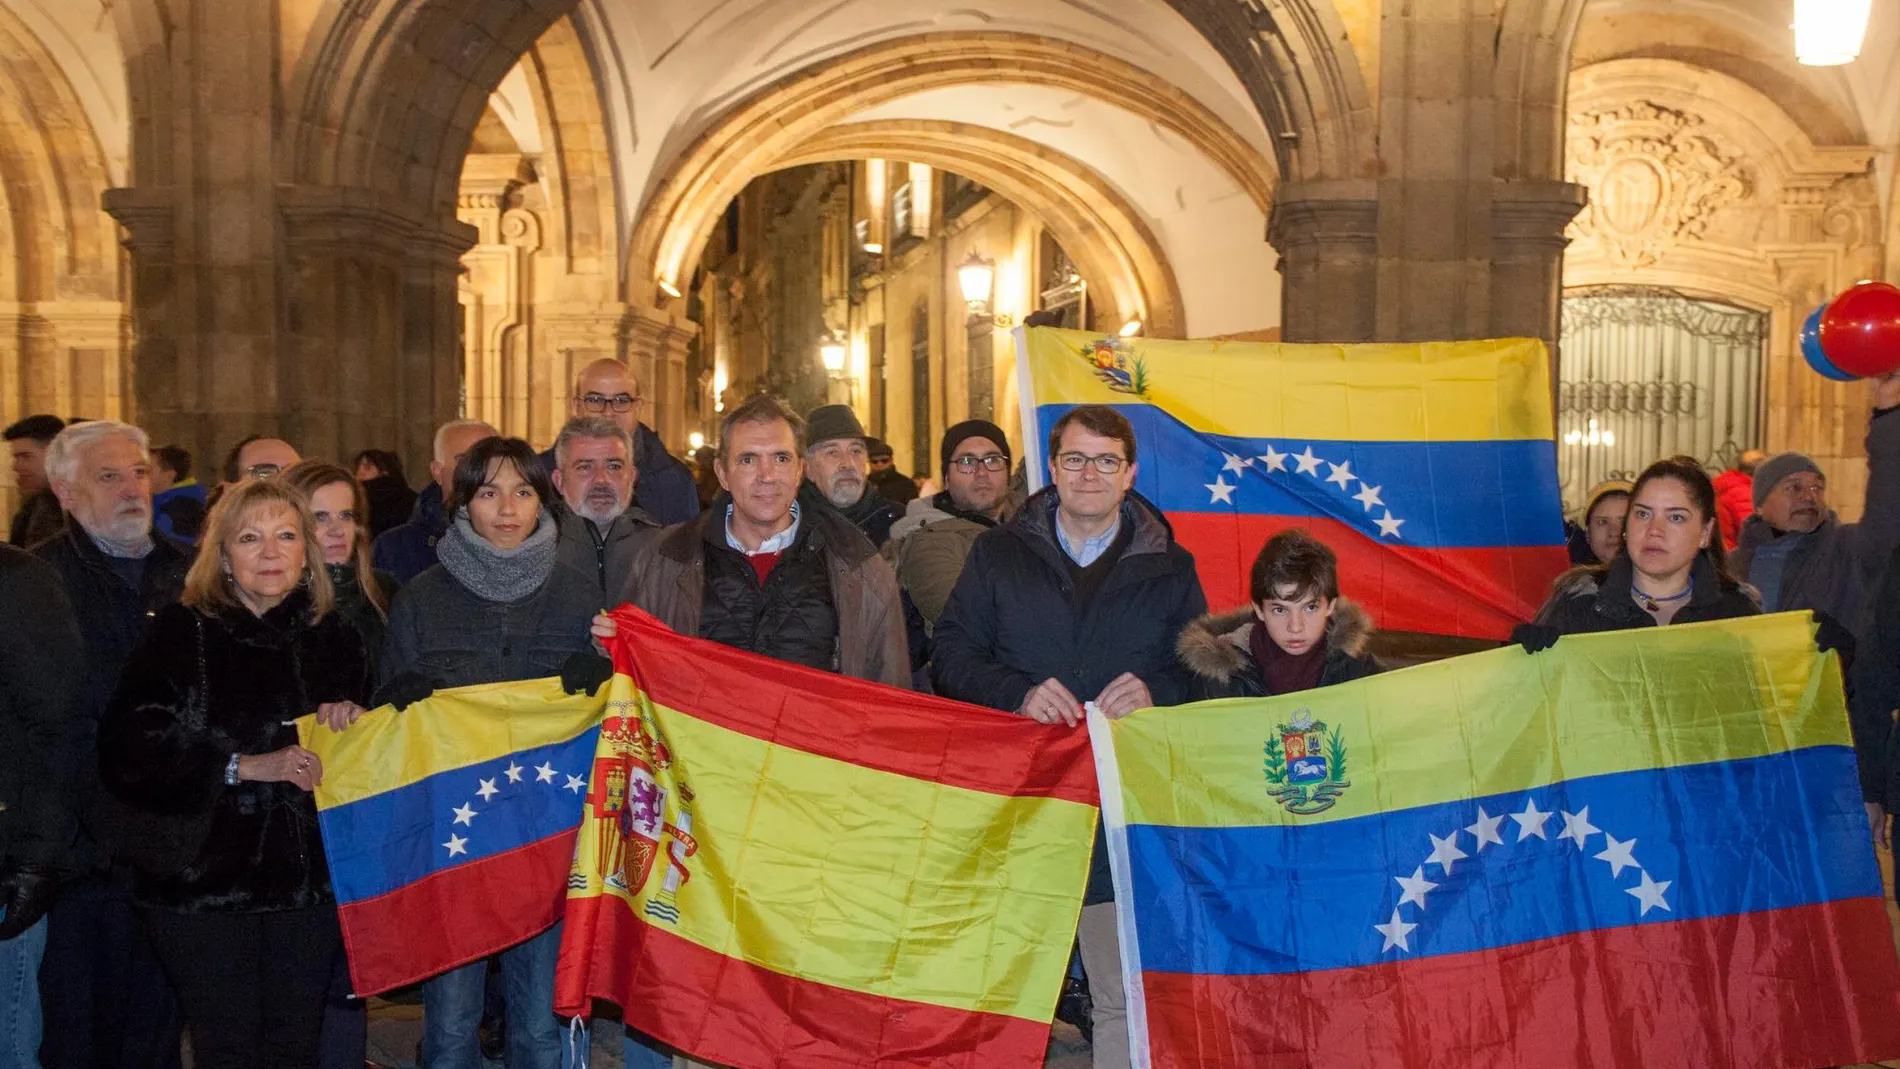 El candidadto del PP a la Junta de Castilla y León, Alfonso Fernández Mañueco junto a Pedro Adolfo Morales, presidente de la asociación de venezolanos en Salamanca, intervienen en el acto de apoyo al pueblo venezolano